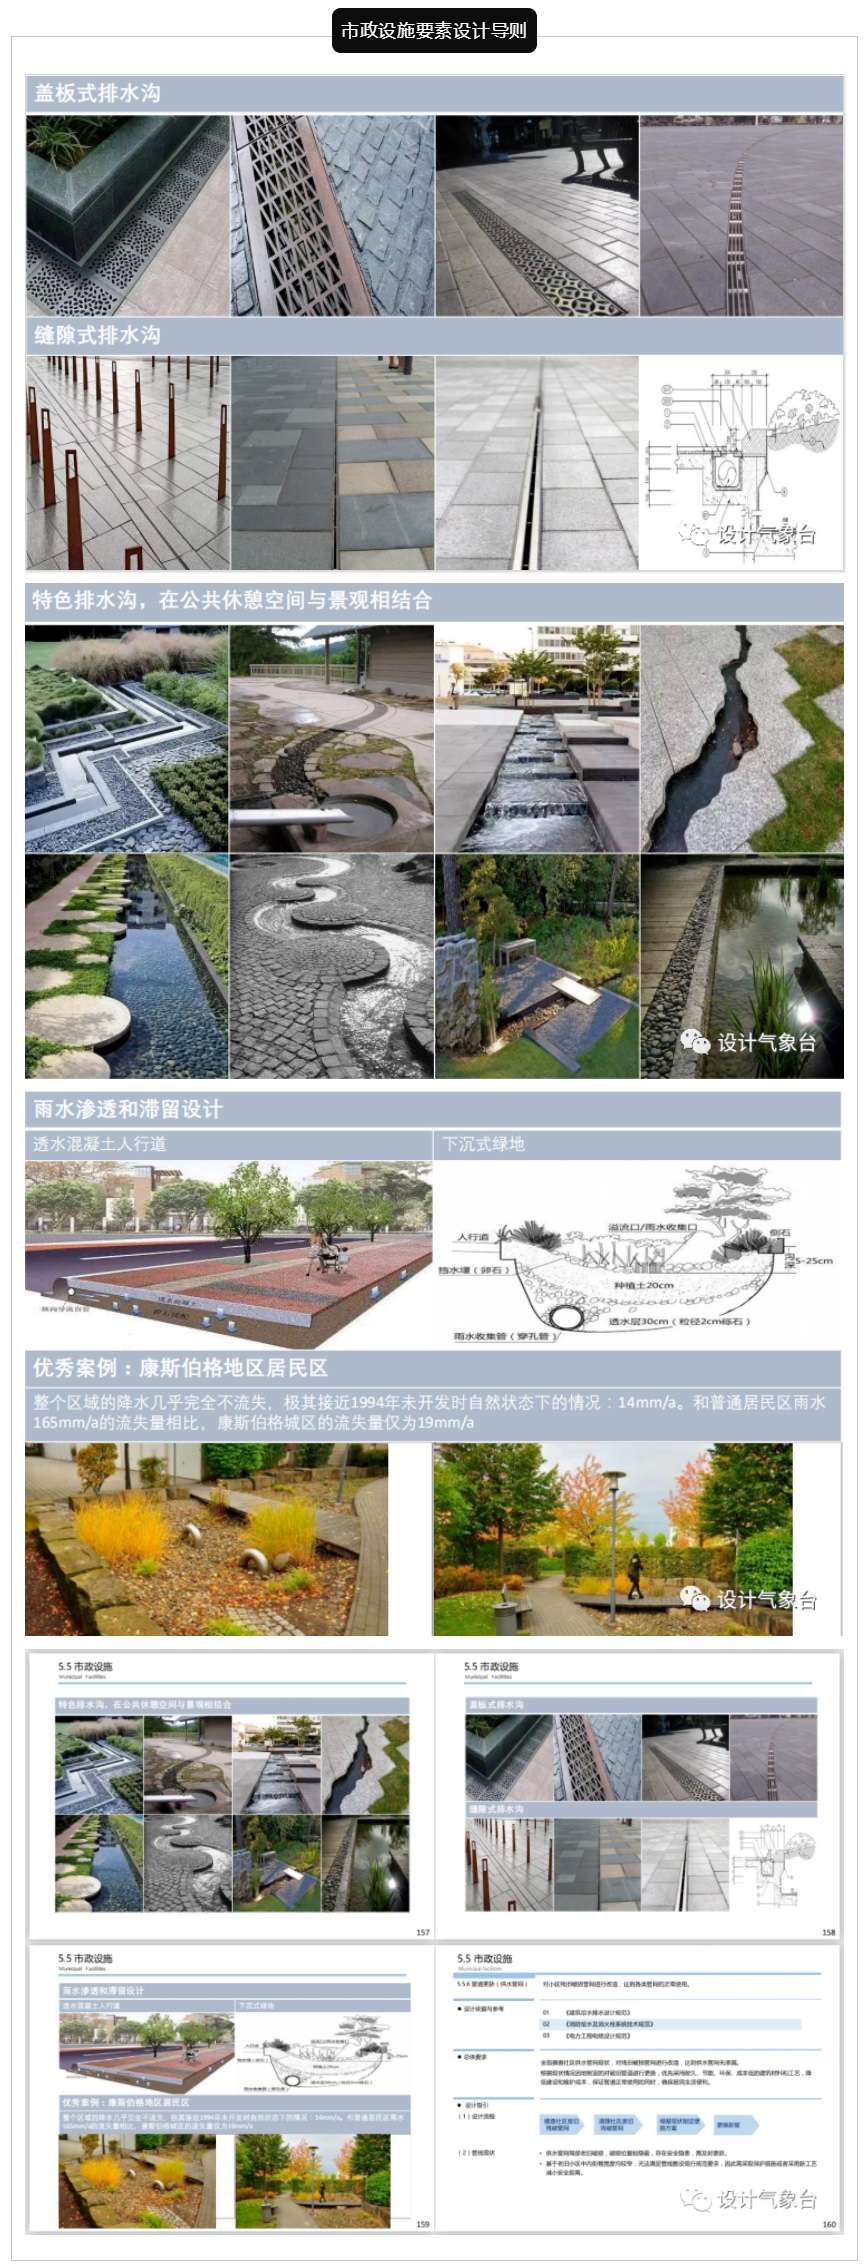 《广州老旧小区微改造设计导则》PDF-4